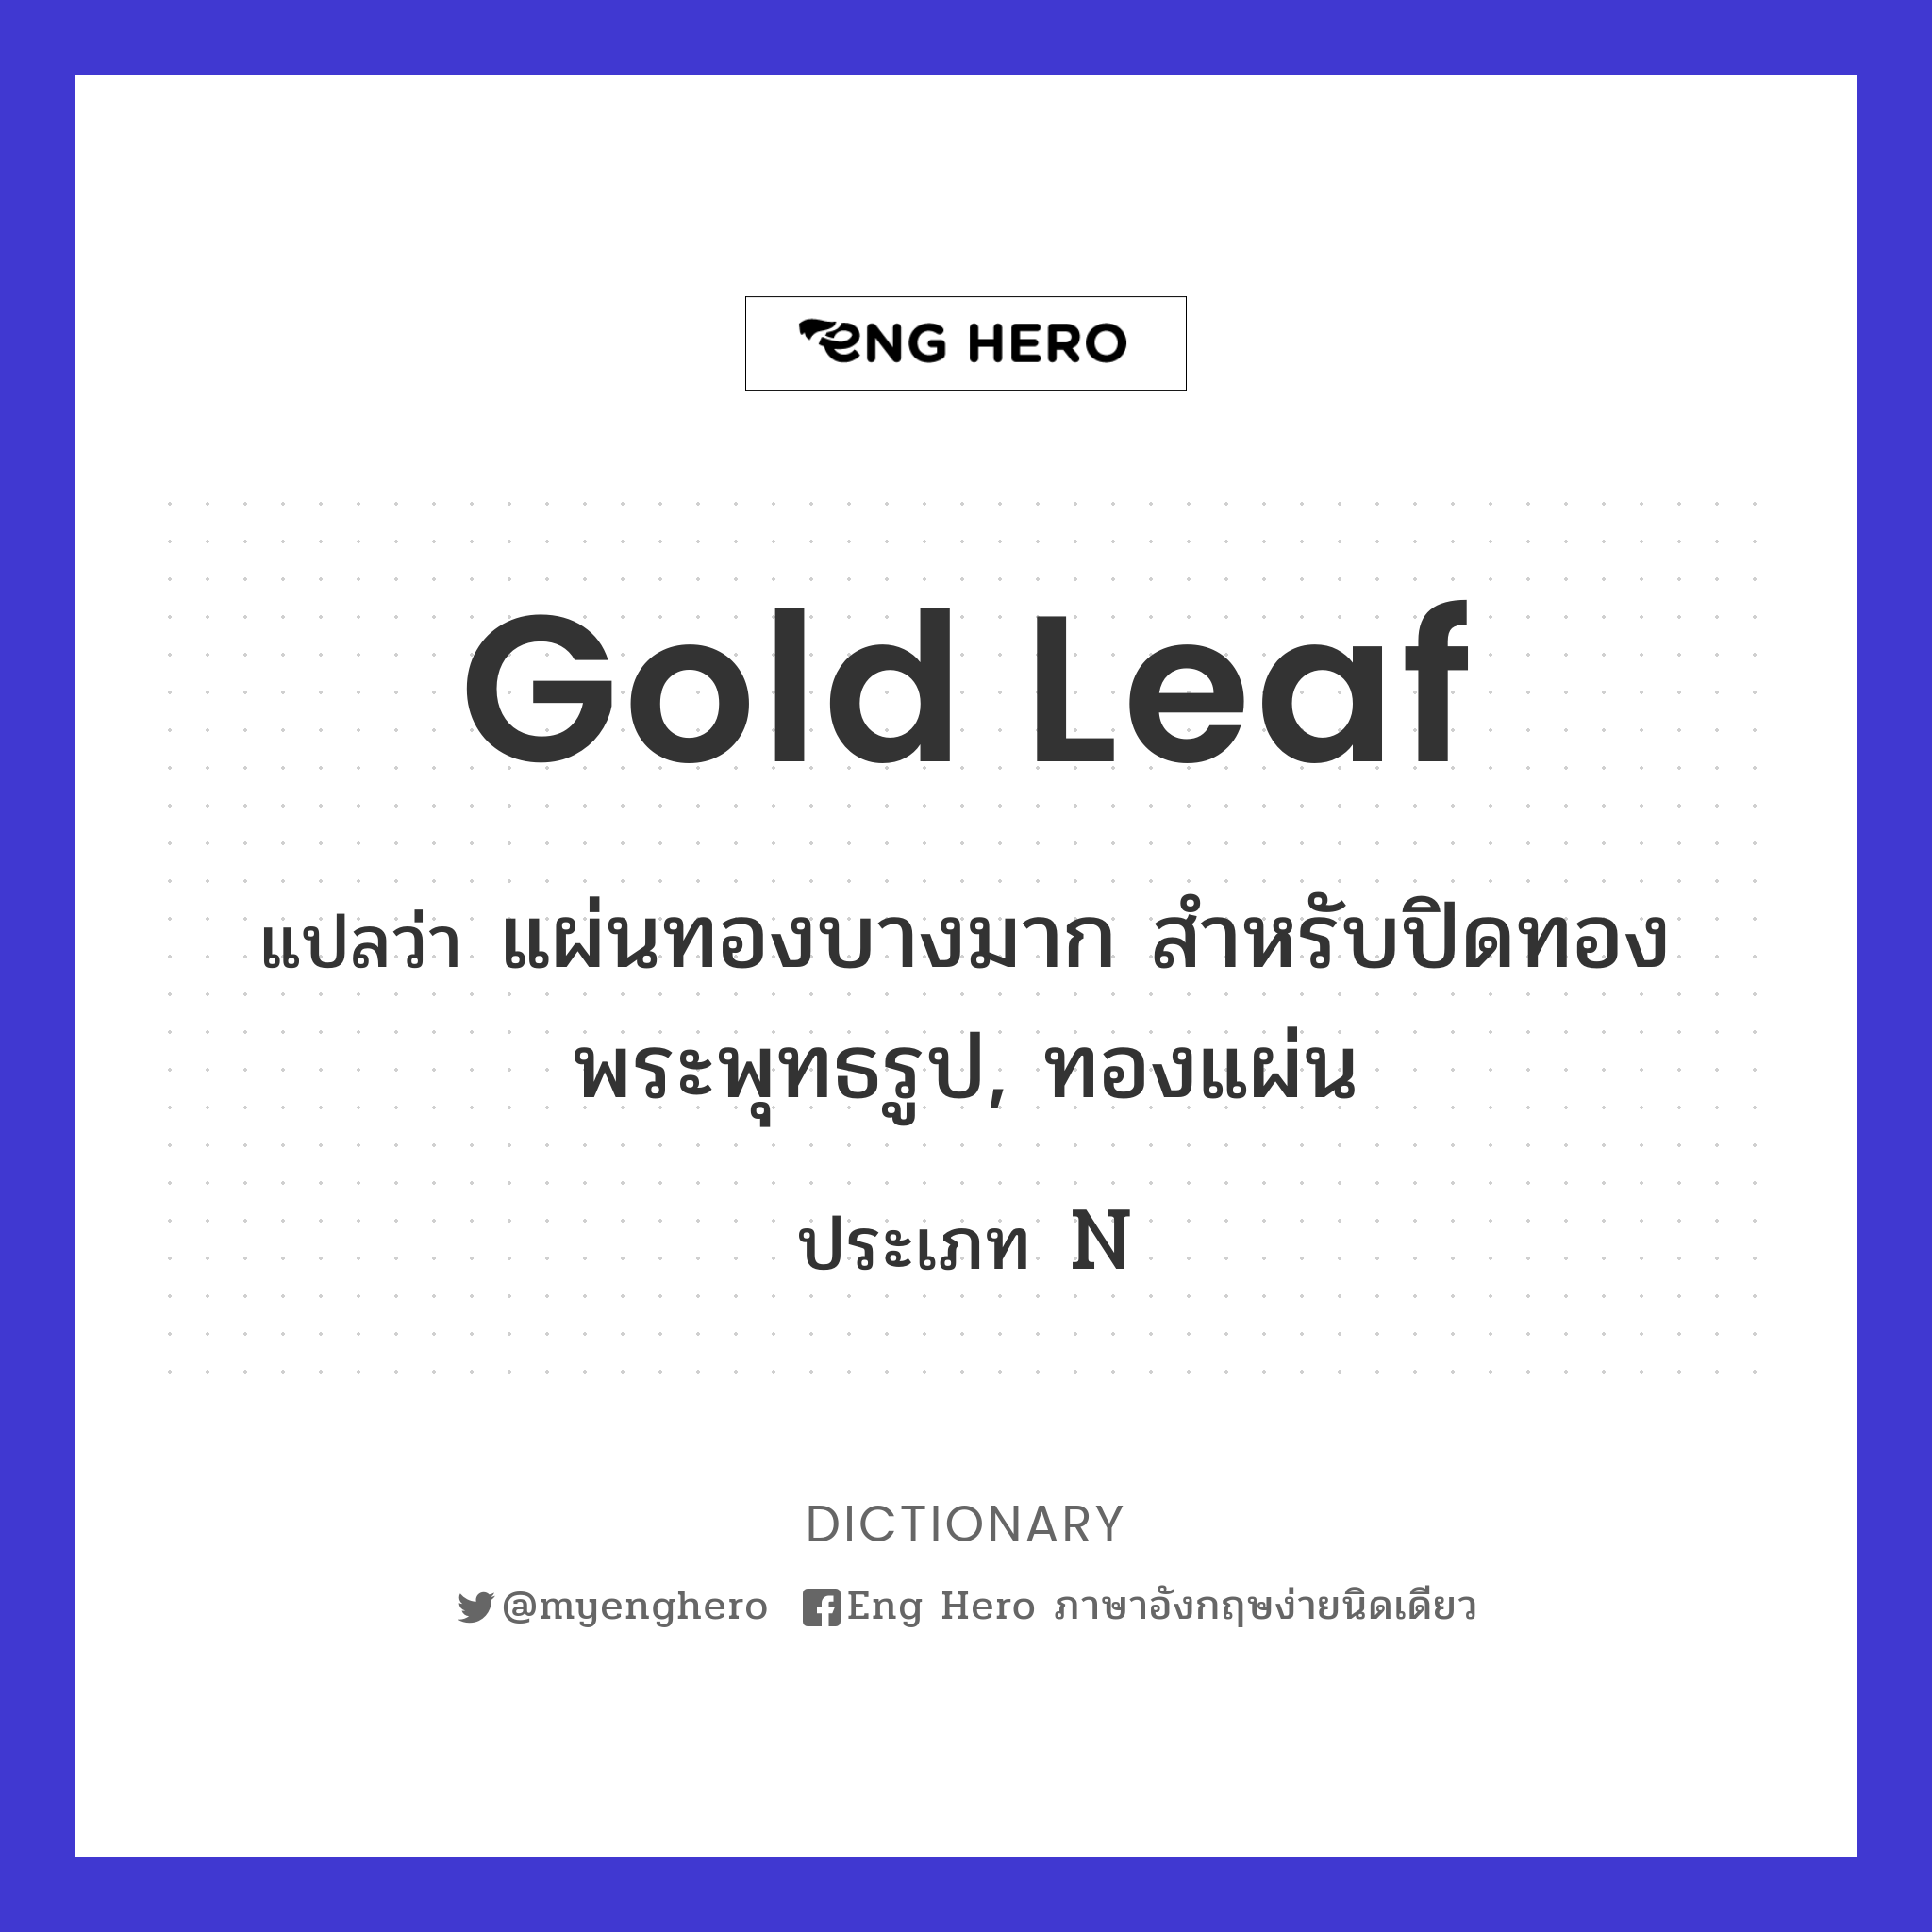 Gold Leaf แปลว่า แผ่นทองบางมาก สำหรับปิดทองพระพุทธรูป, ทองแผ่น | Eng Hero  เรียนภาษาอังกฤษ ออนไลน์ ฟรี